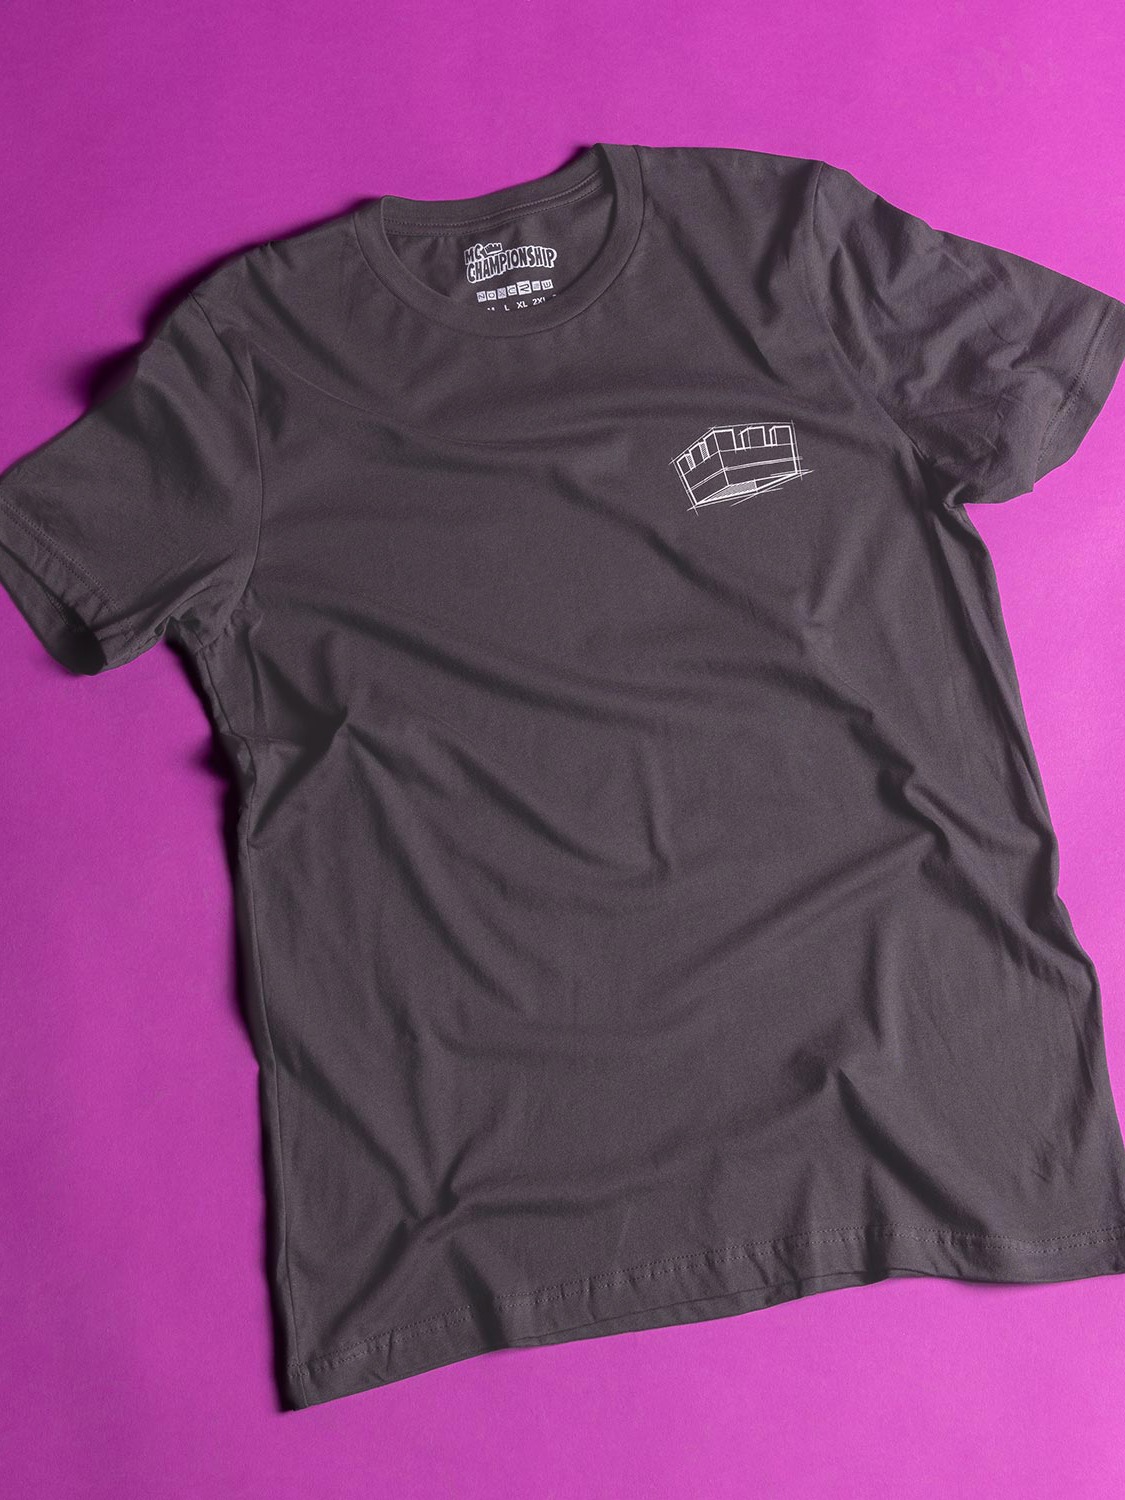 Decision Dome Blueprints T-Shirt | MC Championship & Noxcrew Merchandise